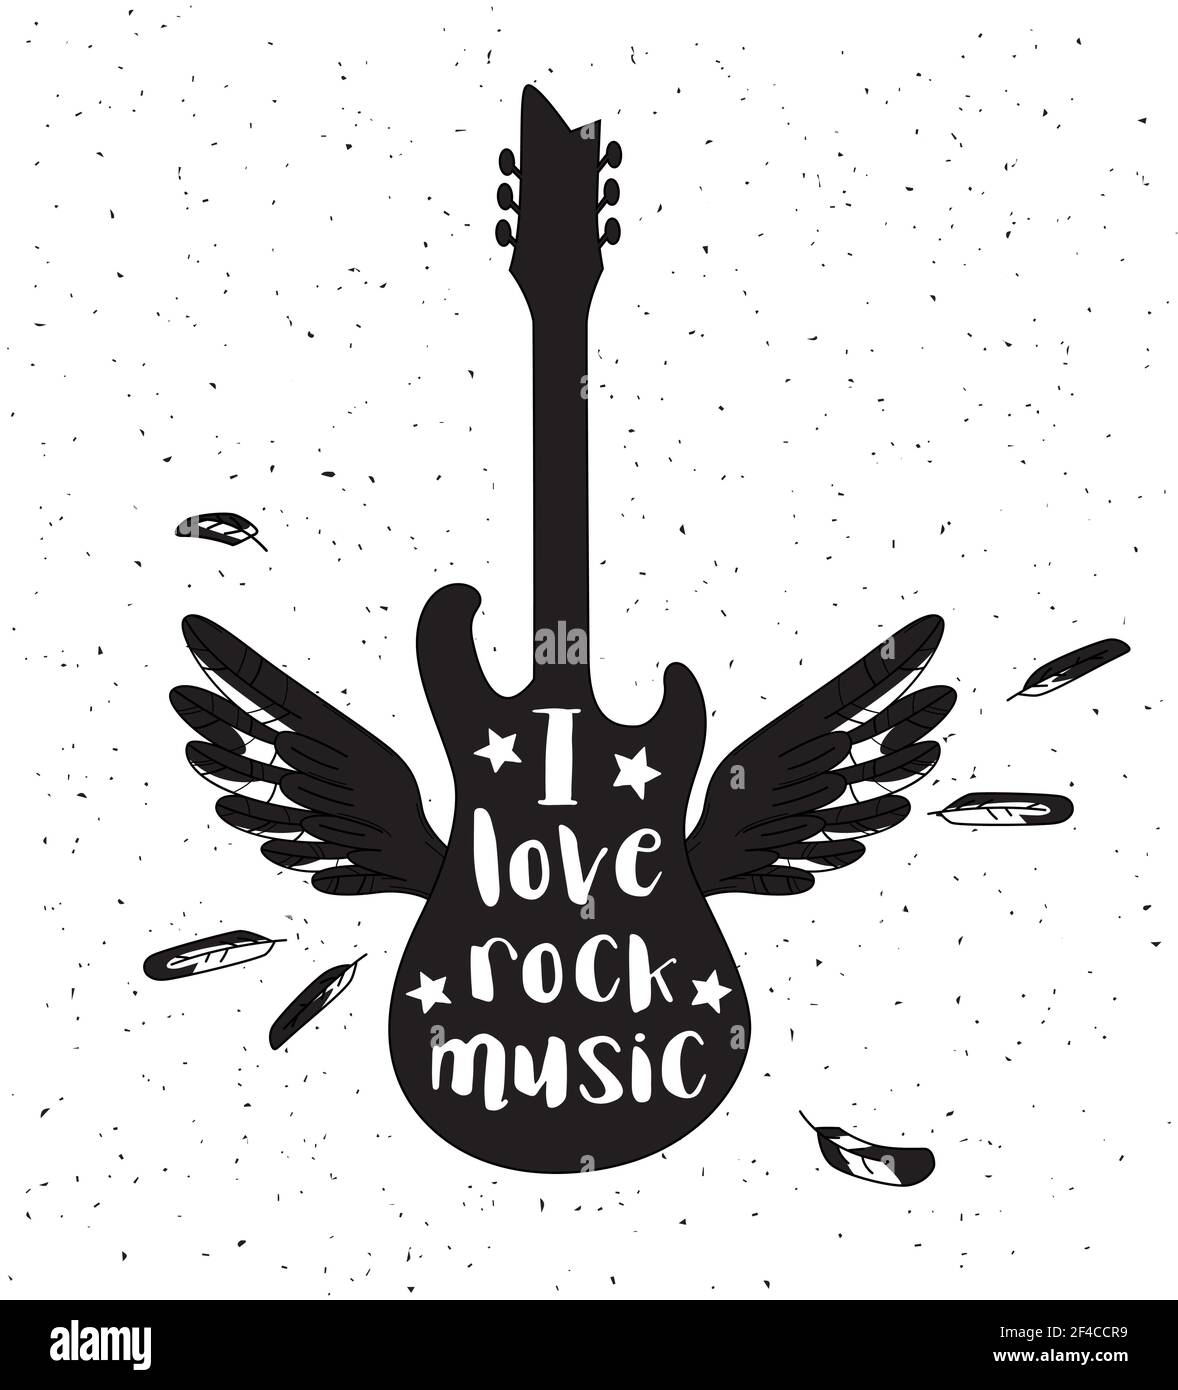 Grunge Rockmusik-Poster mit Gitarre Silhouette auf weißem Hintergrund. Vektorgrafik... Gitarre Silhouette auf weißem Hintergrund Stock Vektor